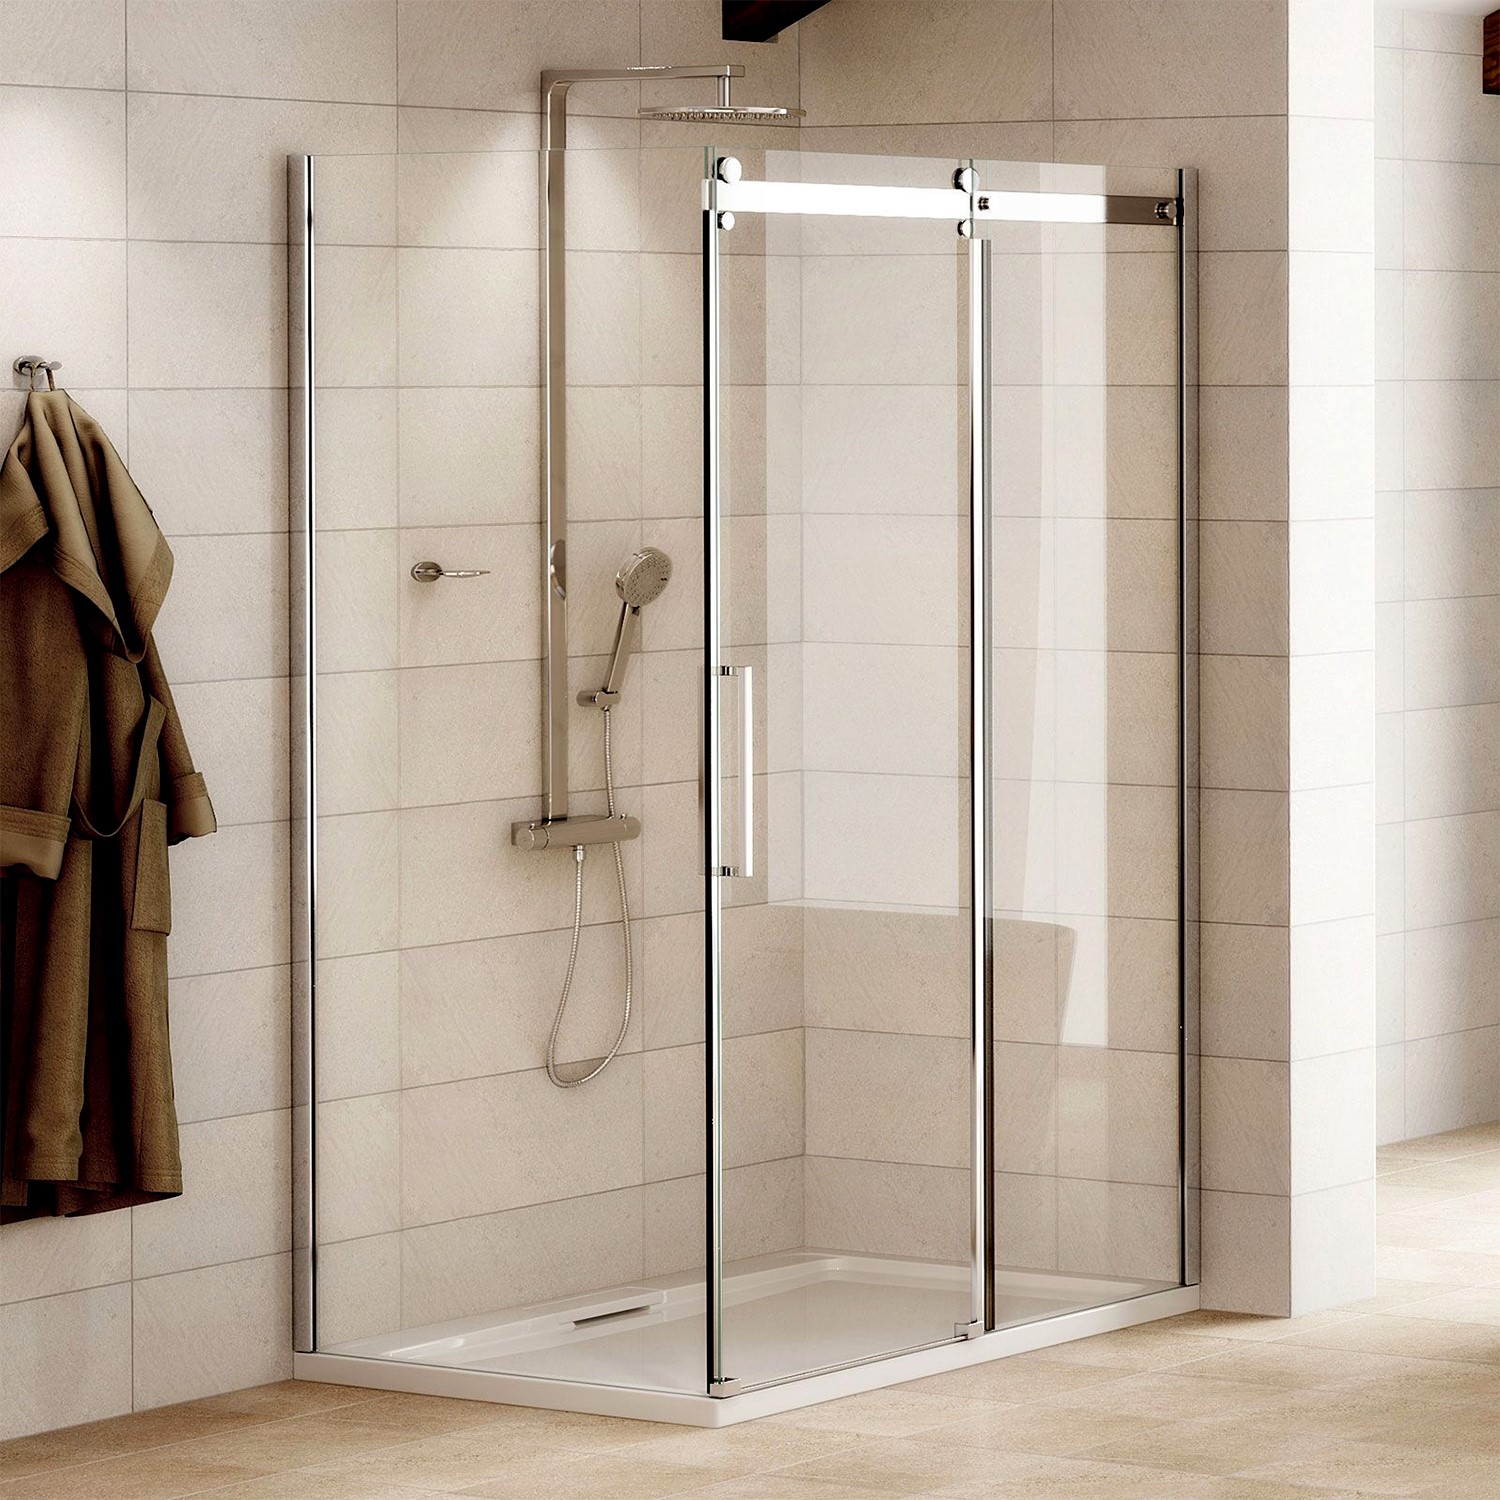 Распродажа душевых. Shower Enclosure Doors. 1200 Shower Room with Glass Sliding Door.